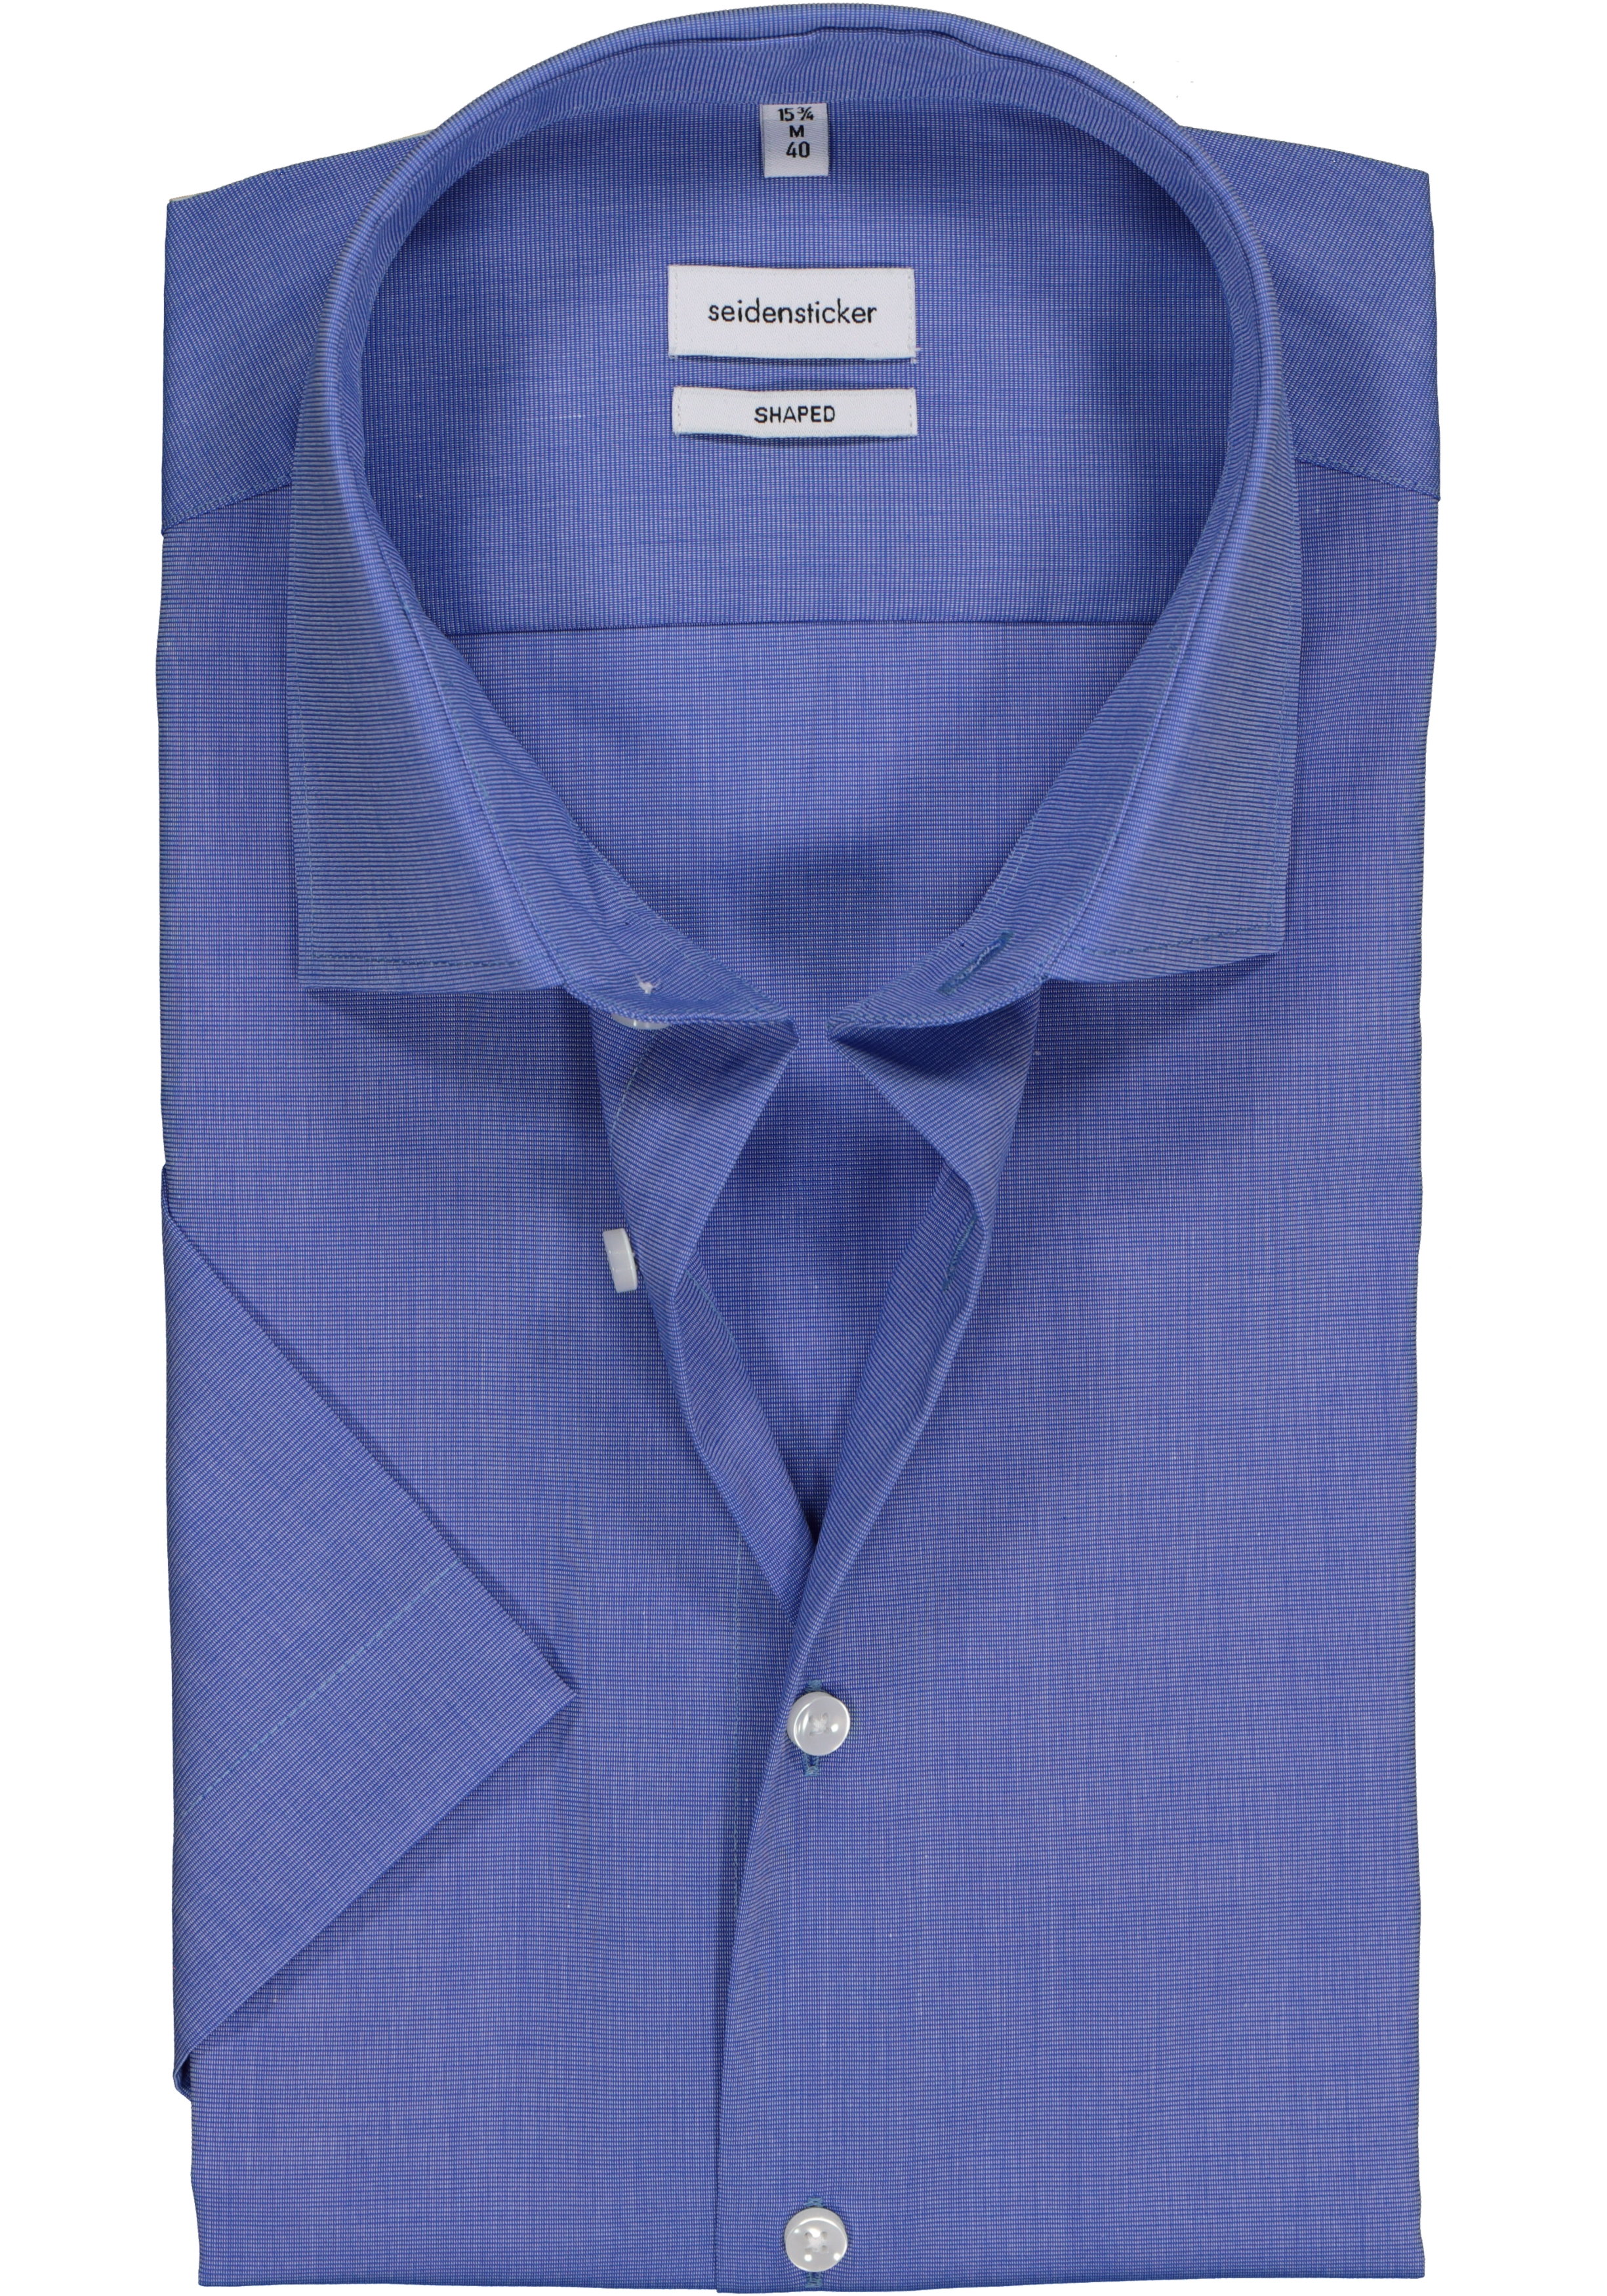 Seidensticker shaped fit overhemd, korte mouw, blauw fil a fil